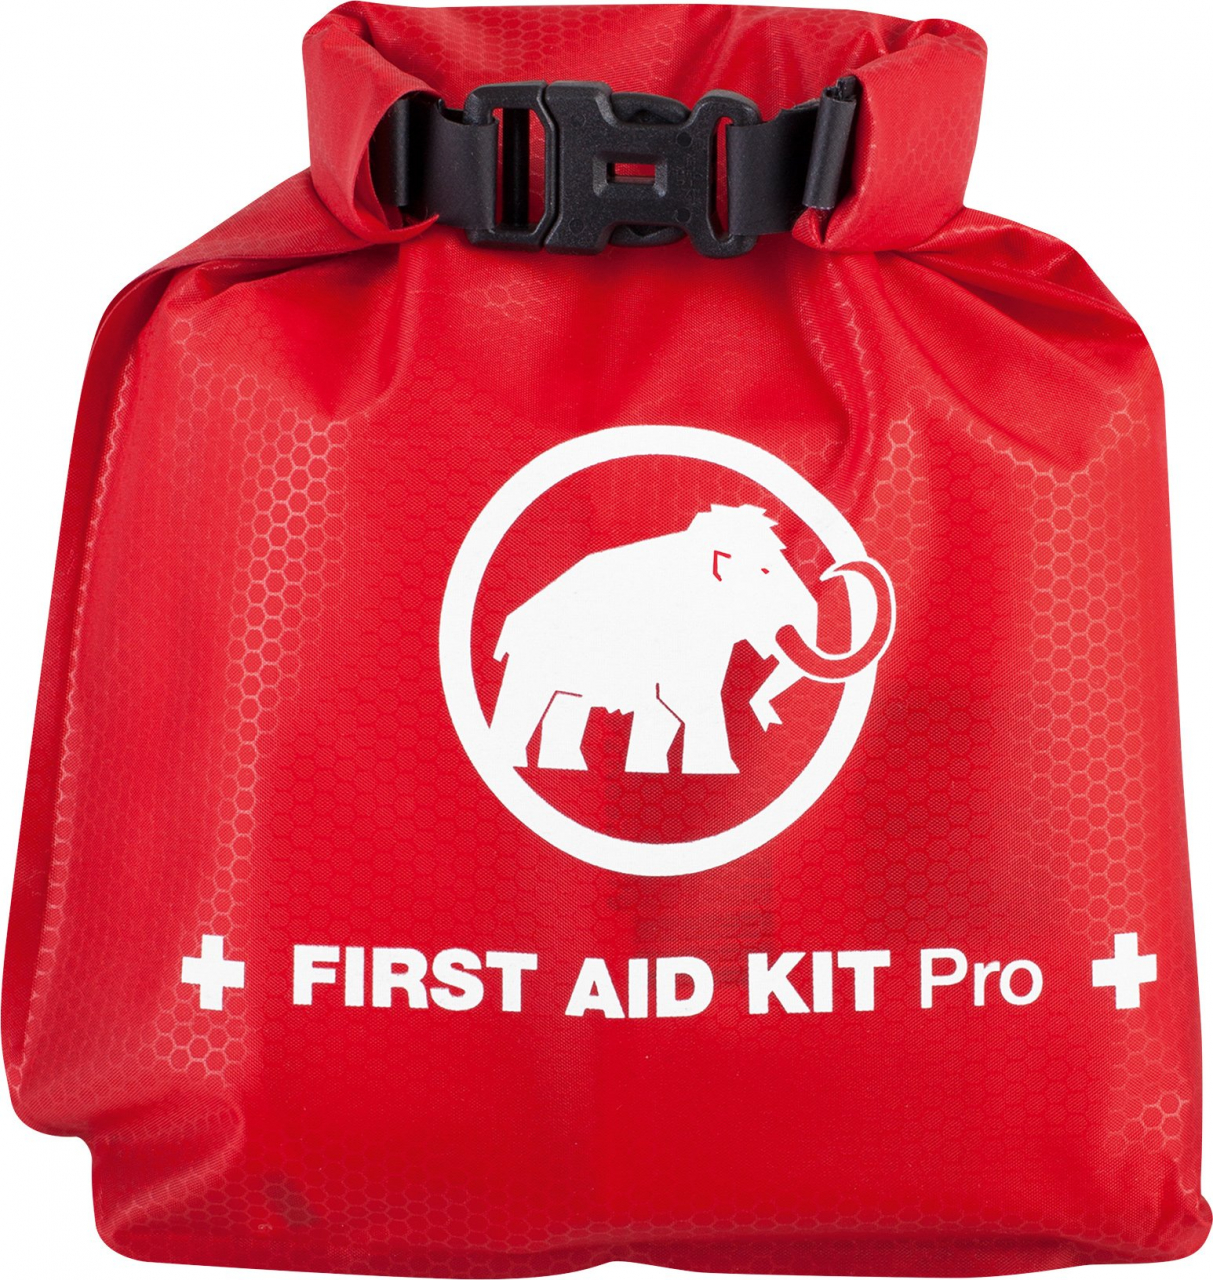 Apteka Mammut First Aid Kit Pro